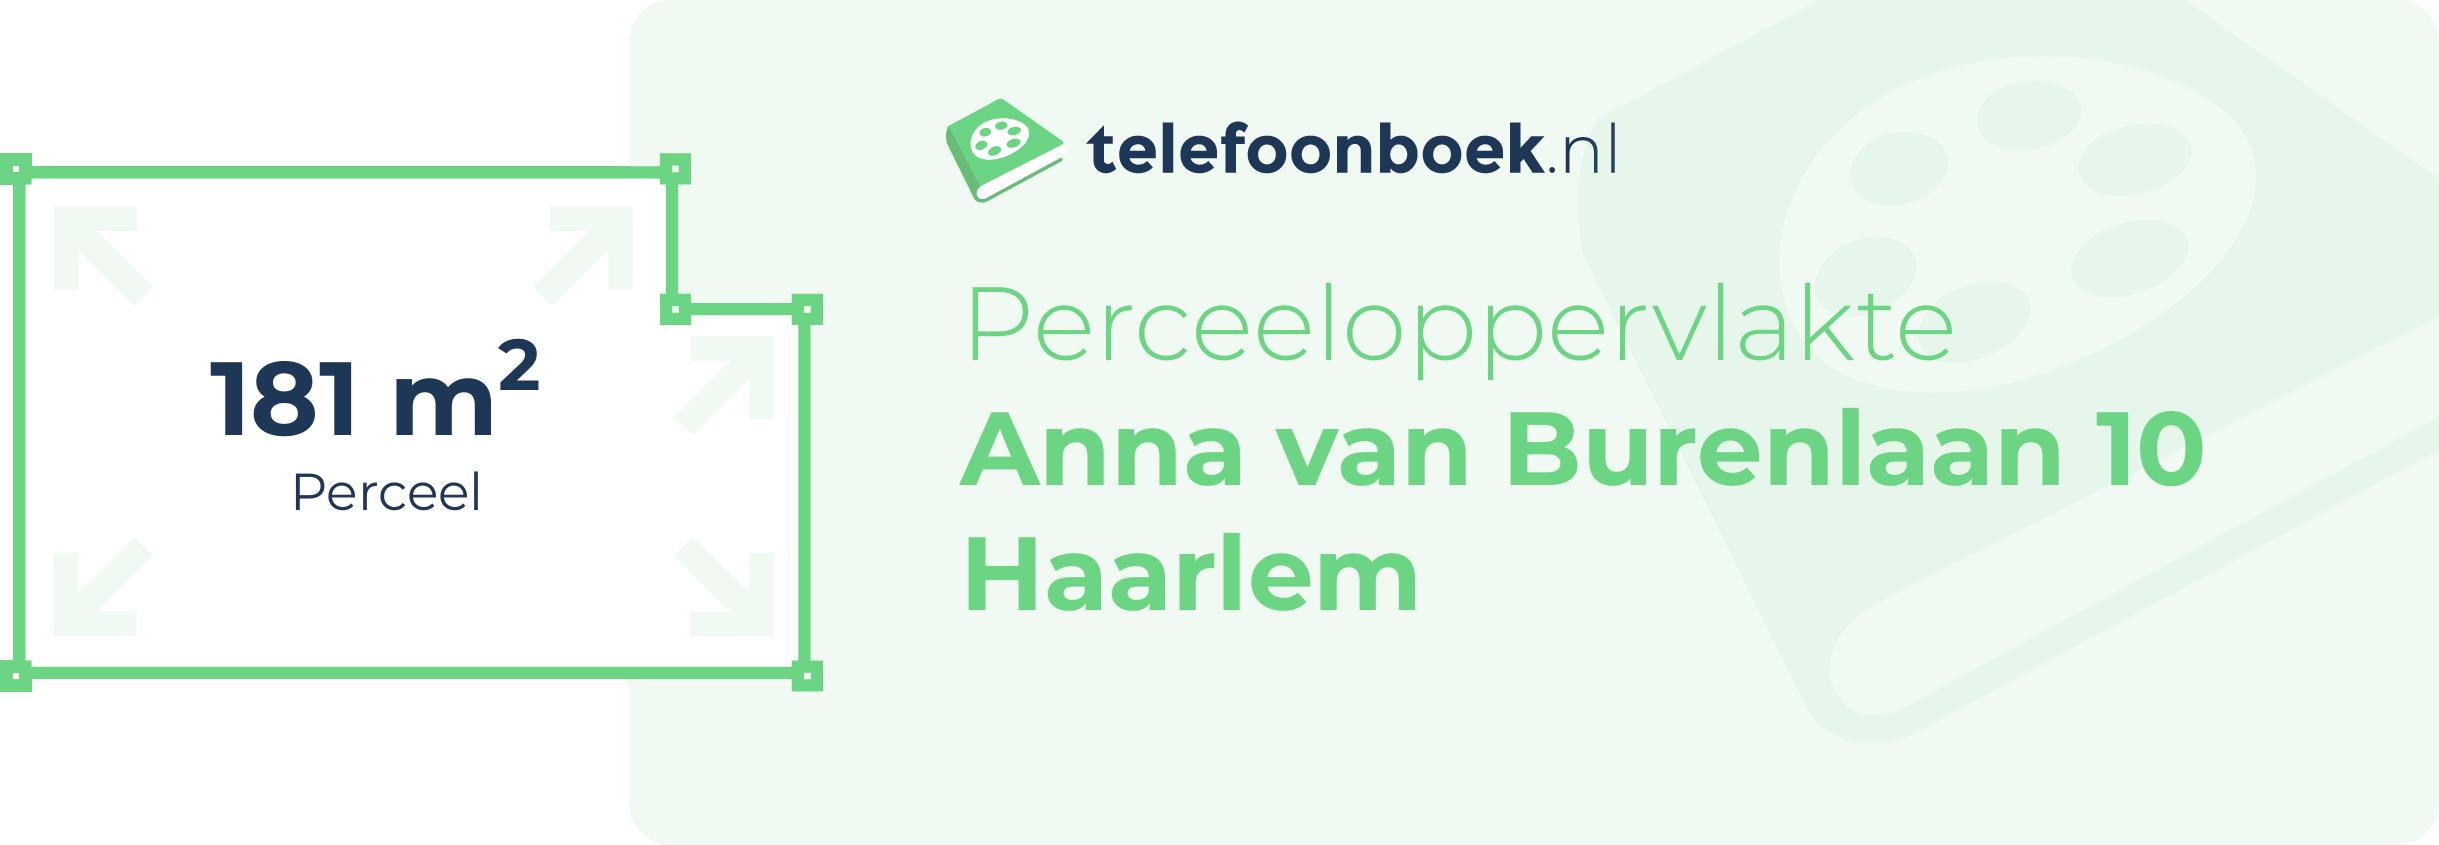 Perceeloppervlakte Anna Van Burenlaan 10 Haarlem